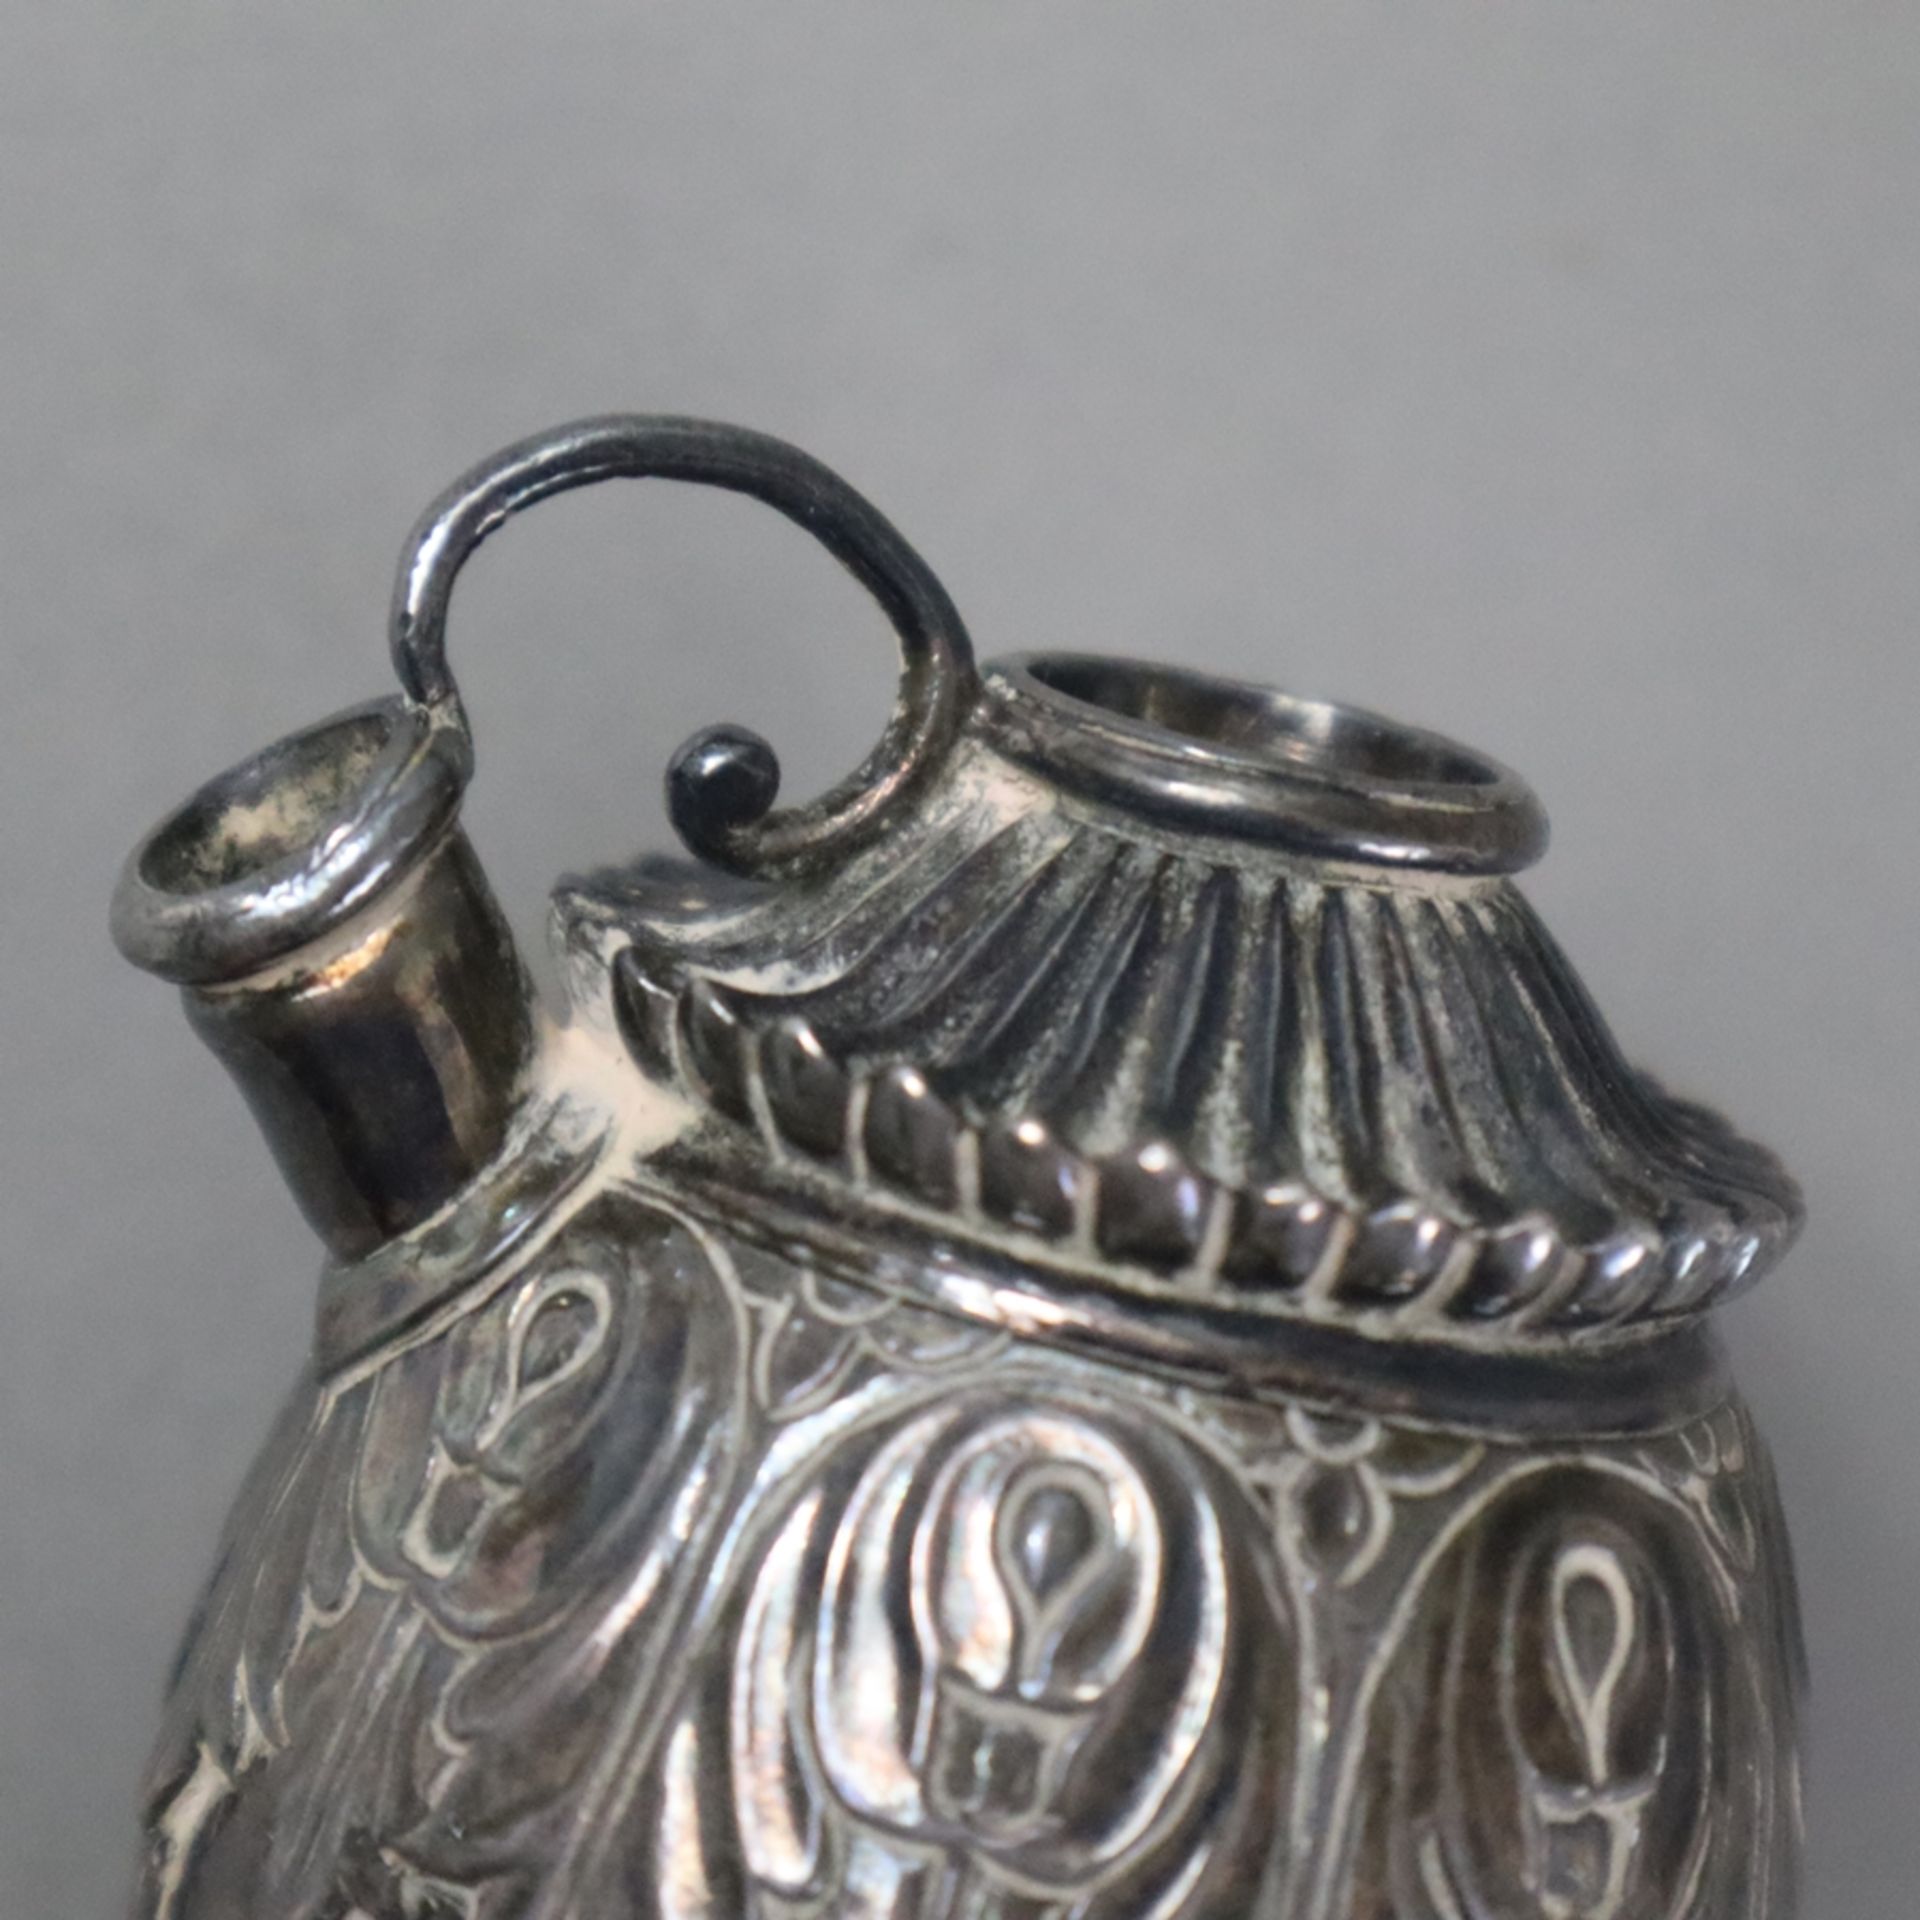 Orientalisches Hookah-Gefäß - wohl Indien, Moghul-Stil, Metall, versilbert, eiförmige Hookah-Körper - Image 4 of 5